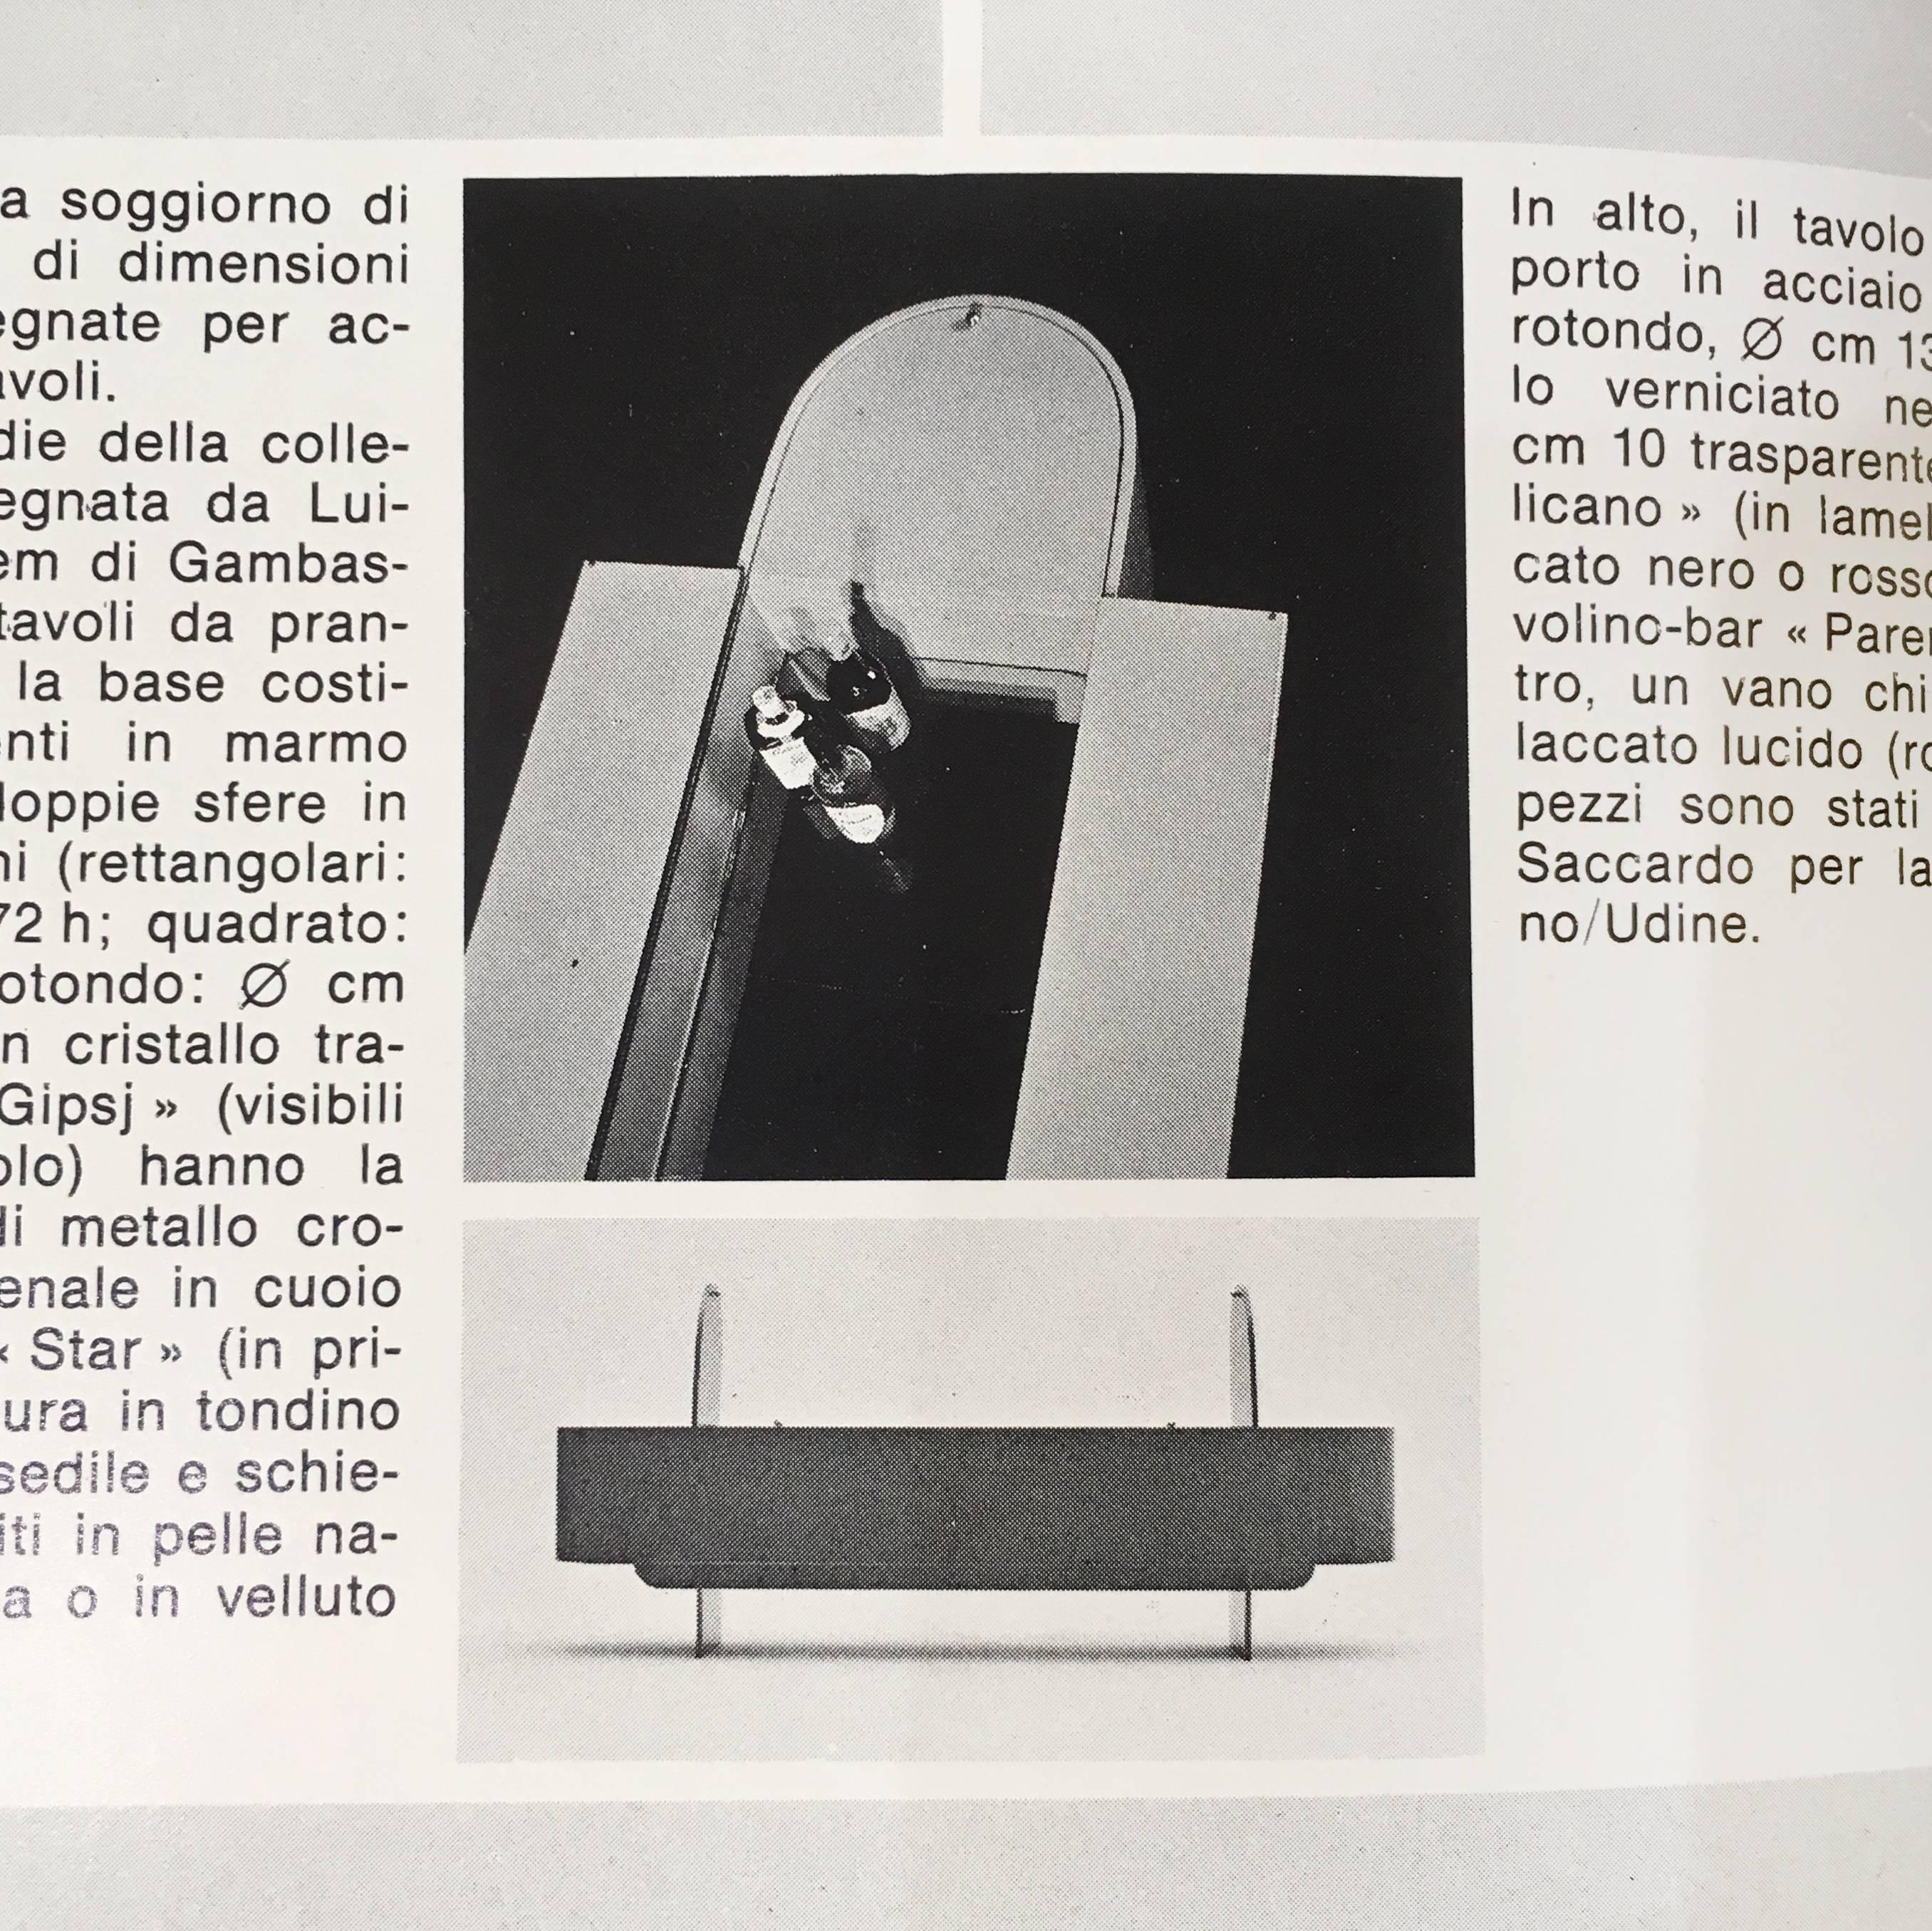 Luigi Saccardo Parentesi Black Lacquered Bar by Arrmet for Maison Jansen 1976 2